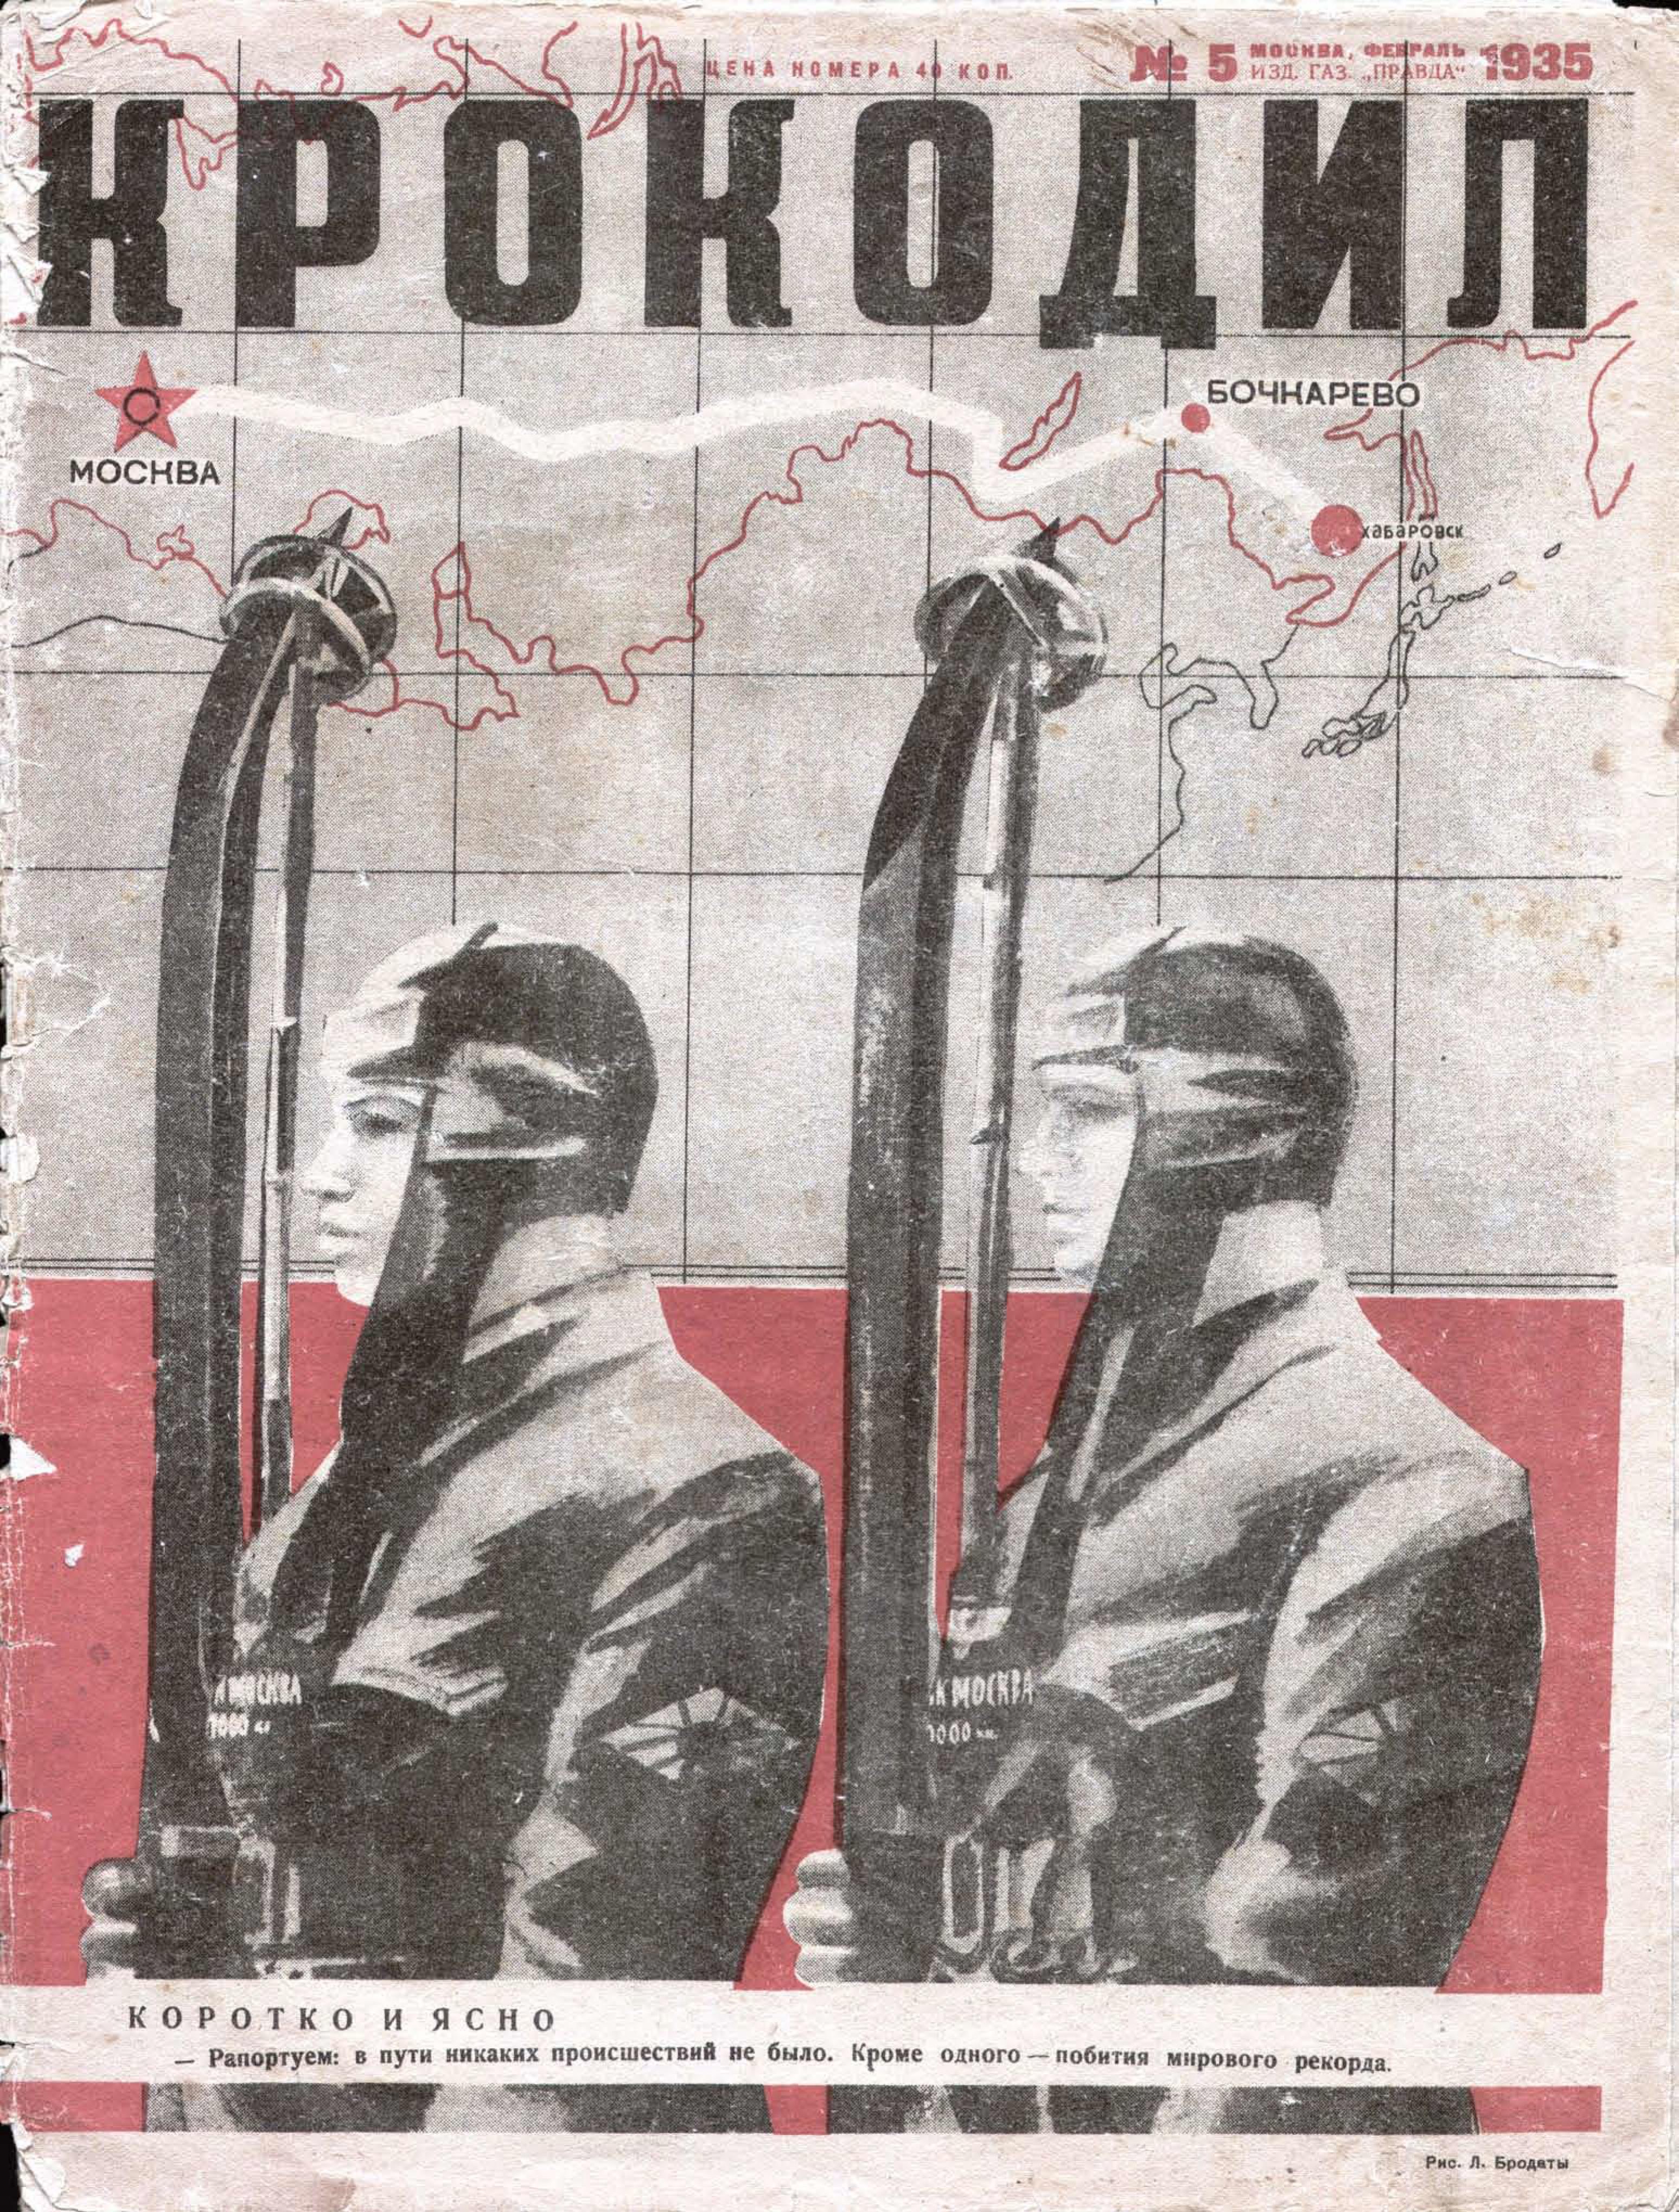 Обложка журнала "Крокодил", №5, февраль 1935 года